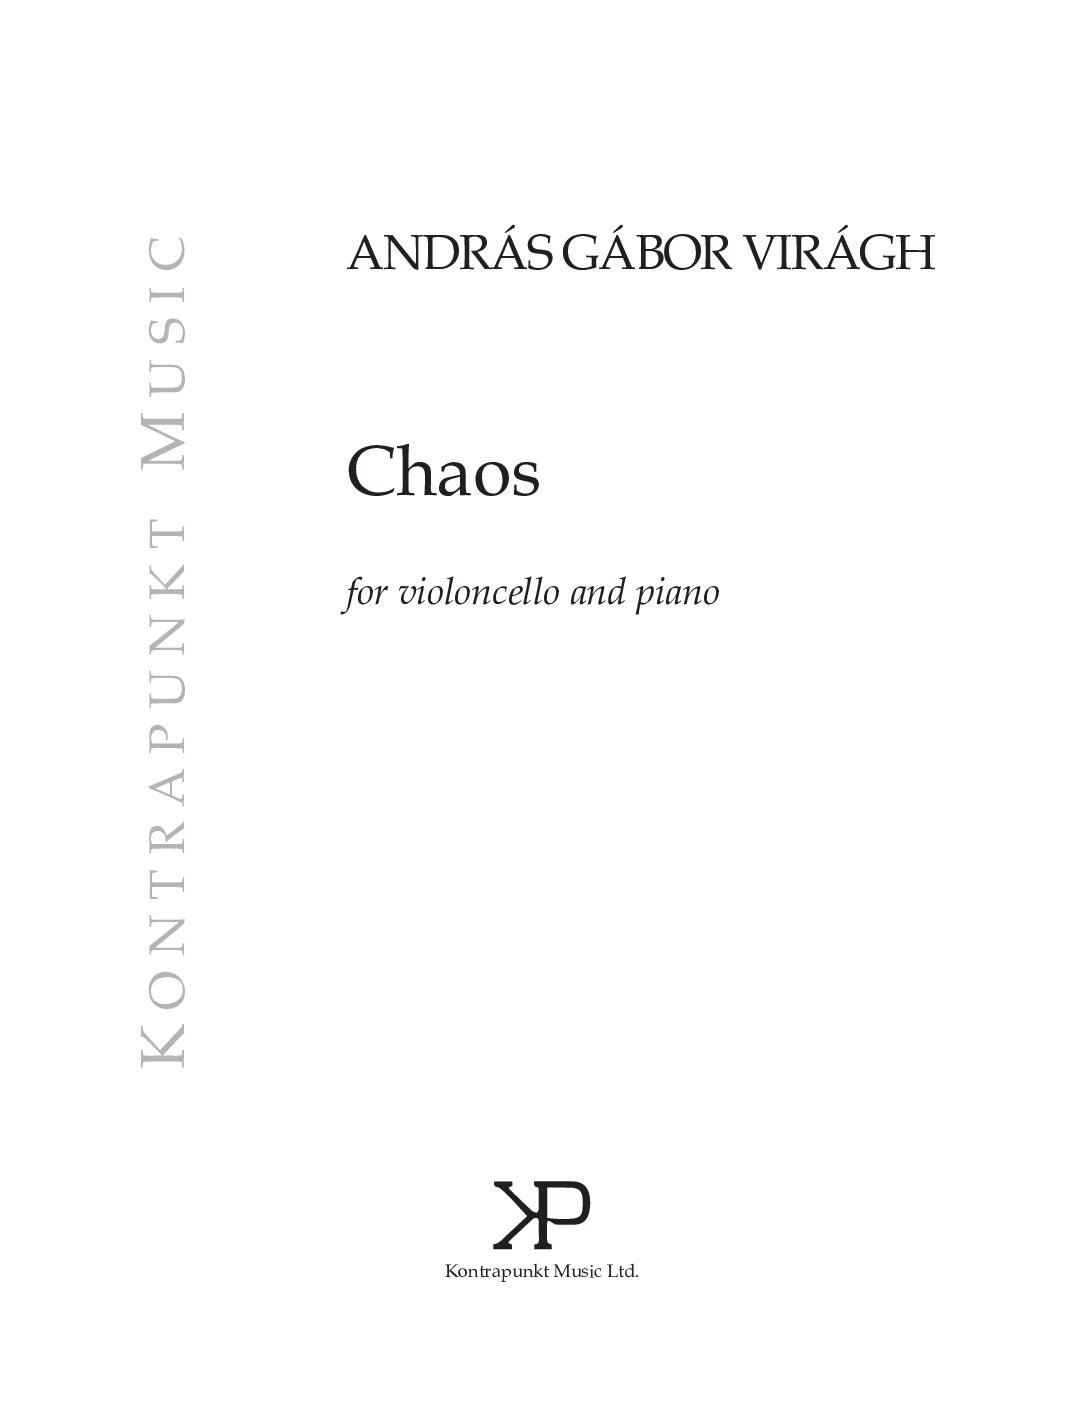 Virágh András Gábor: Chaos - for violoncello and piano